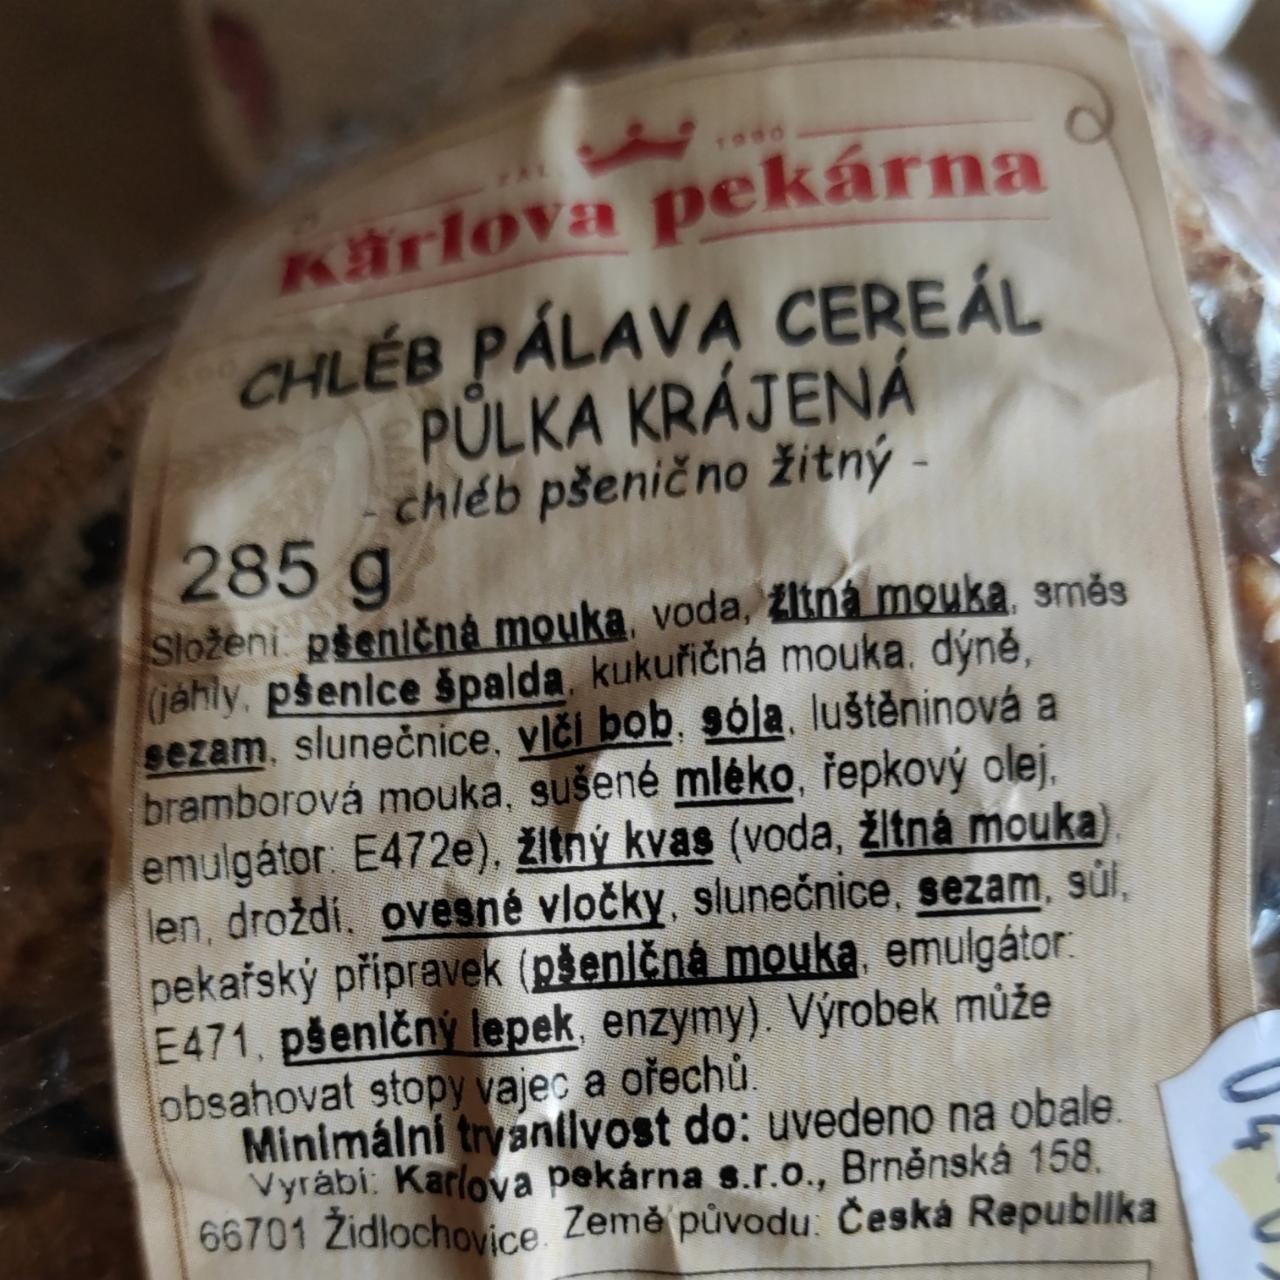 Fotografie - Chléb Pálava cereál půlka krájená Karlova pekárna